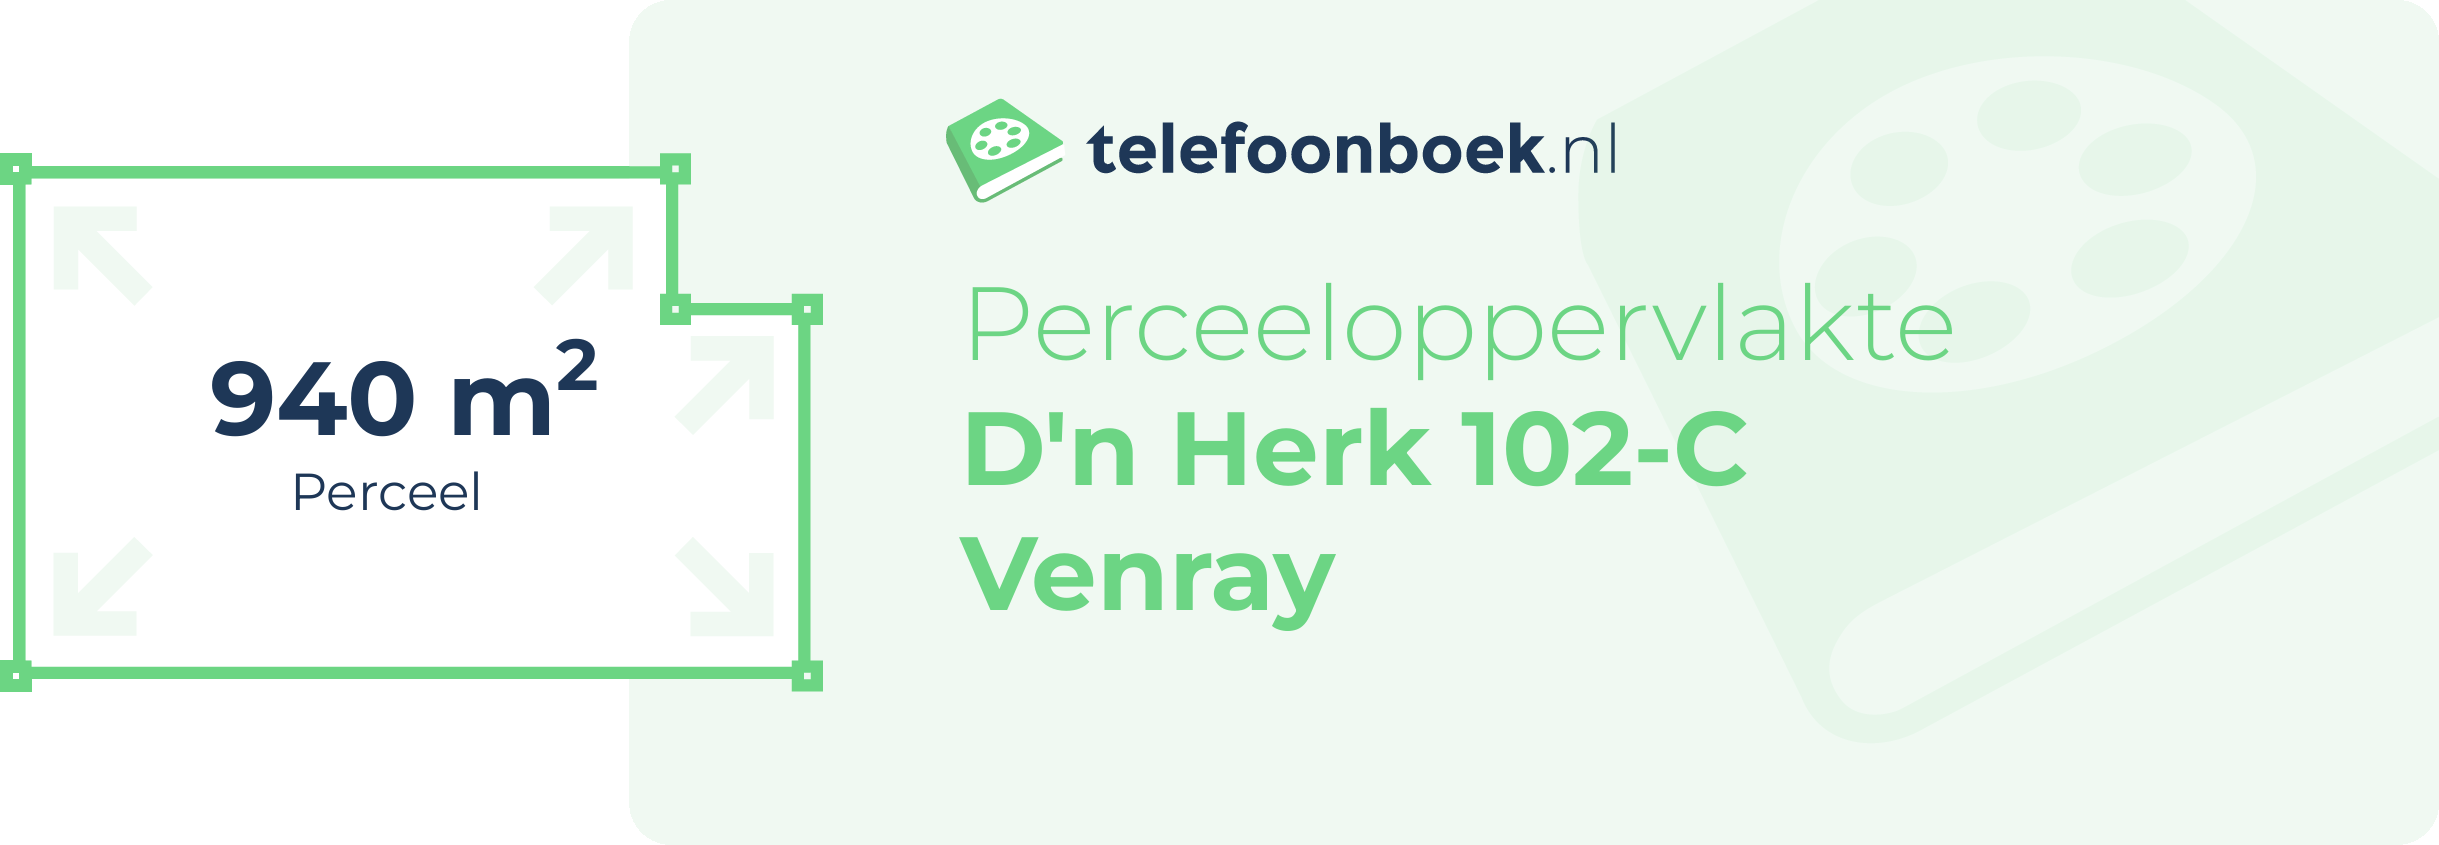 Perceeloppervlakte D'n Herk 102-C Venray